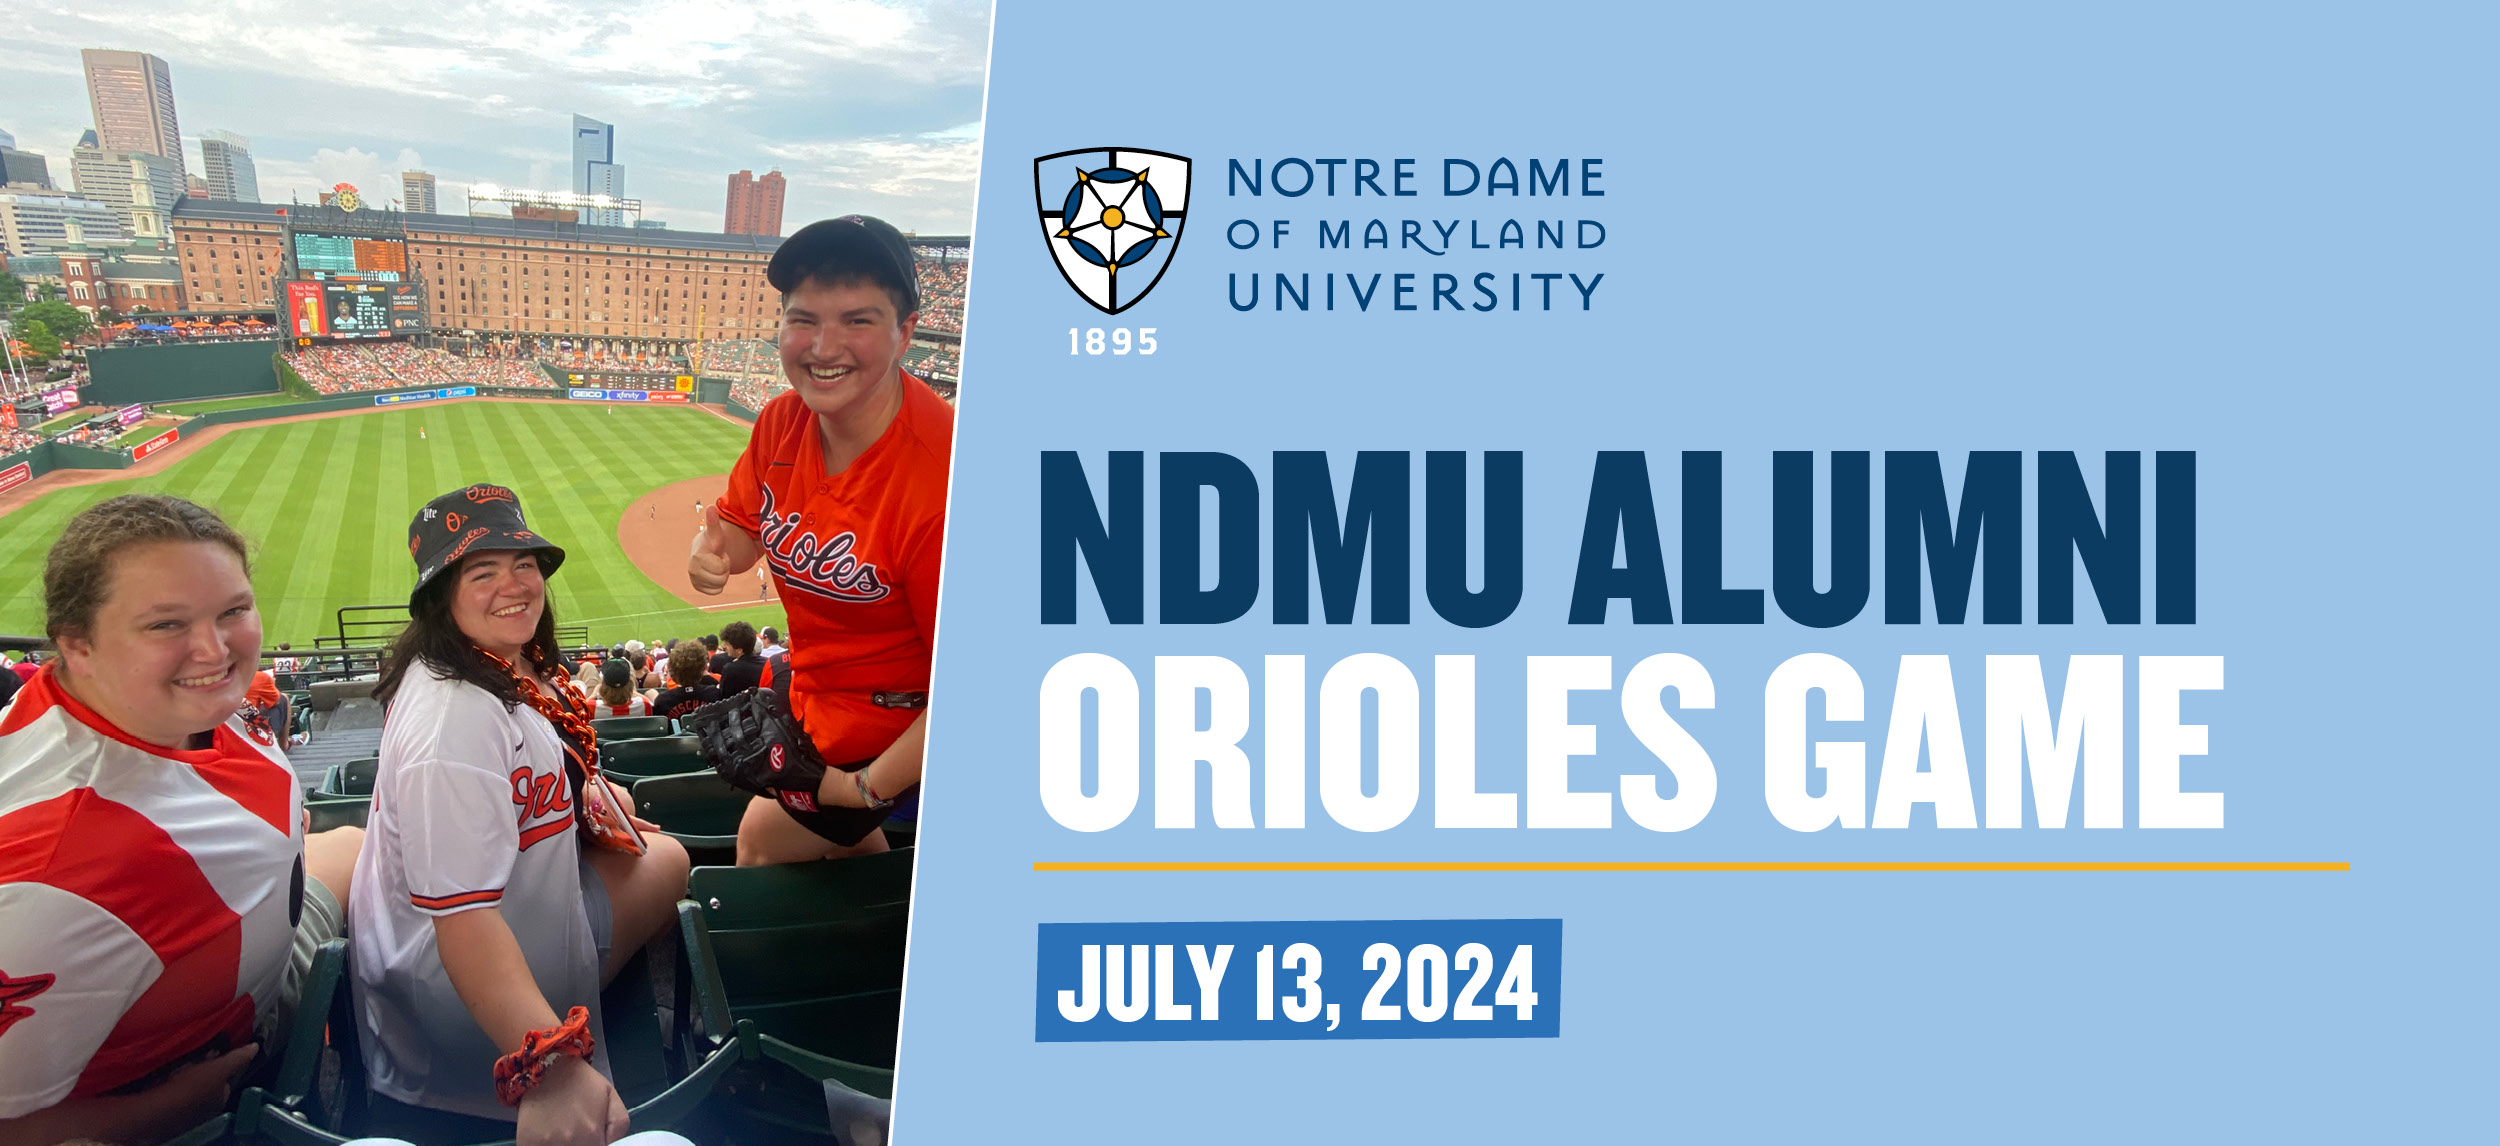 NDMU Alumni Orioles Game July 13